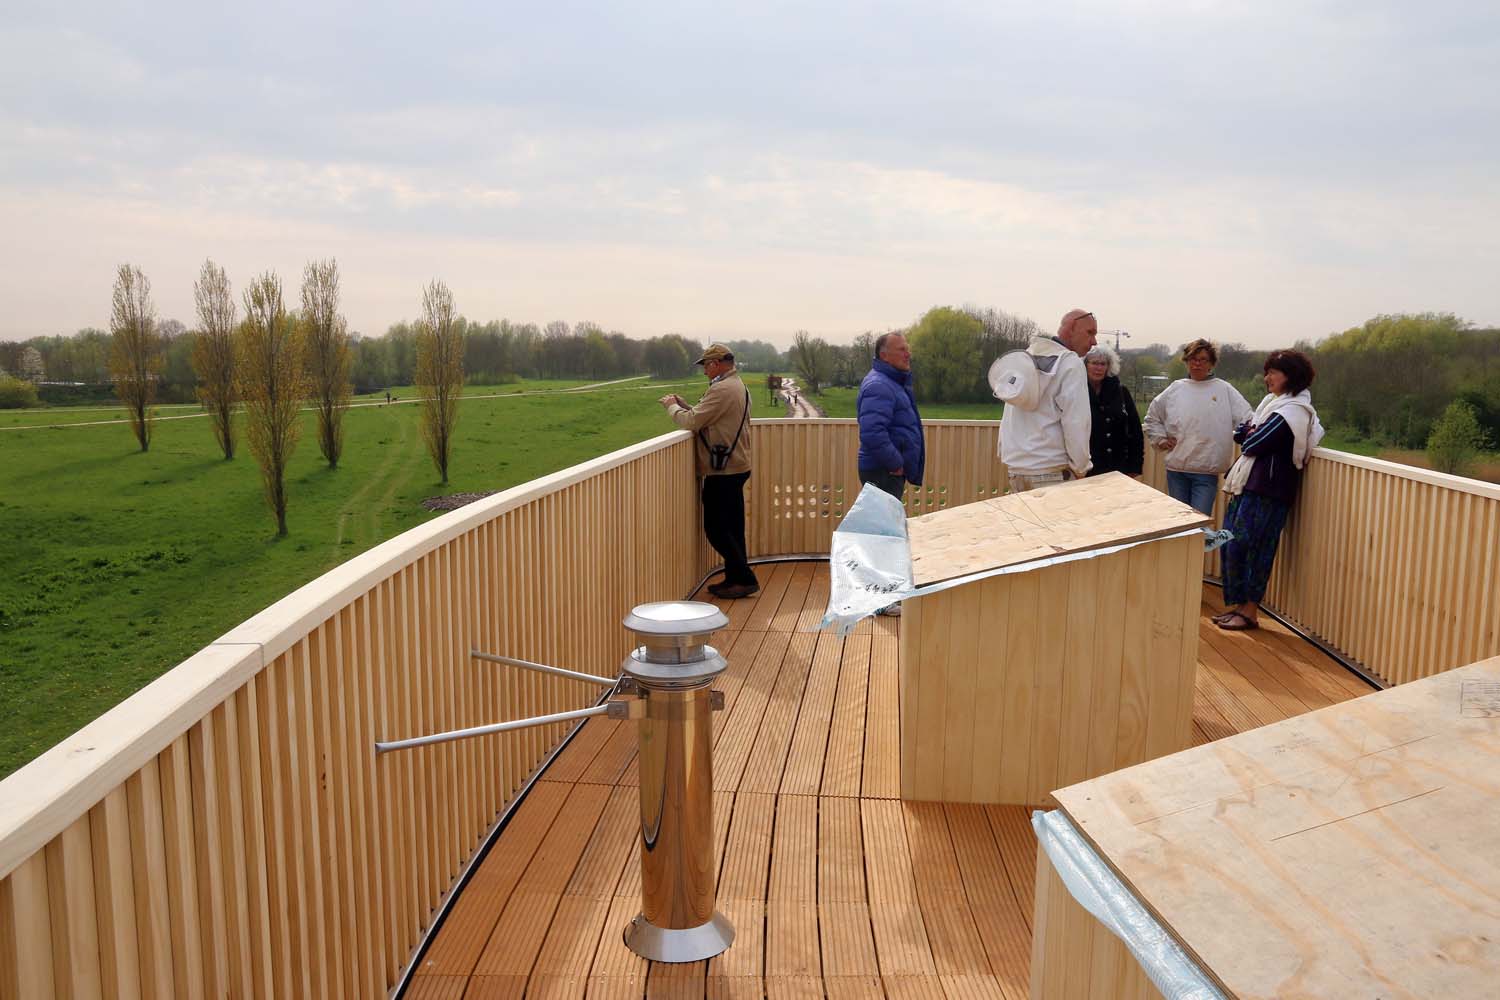 Melarium Ackerdijkse Bos geopend en bewoond - 24 april 2015